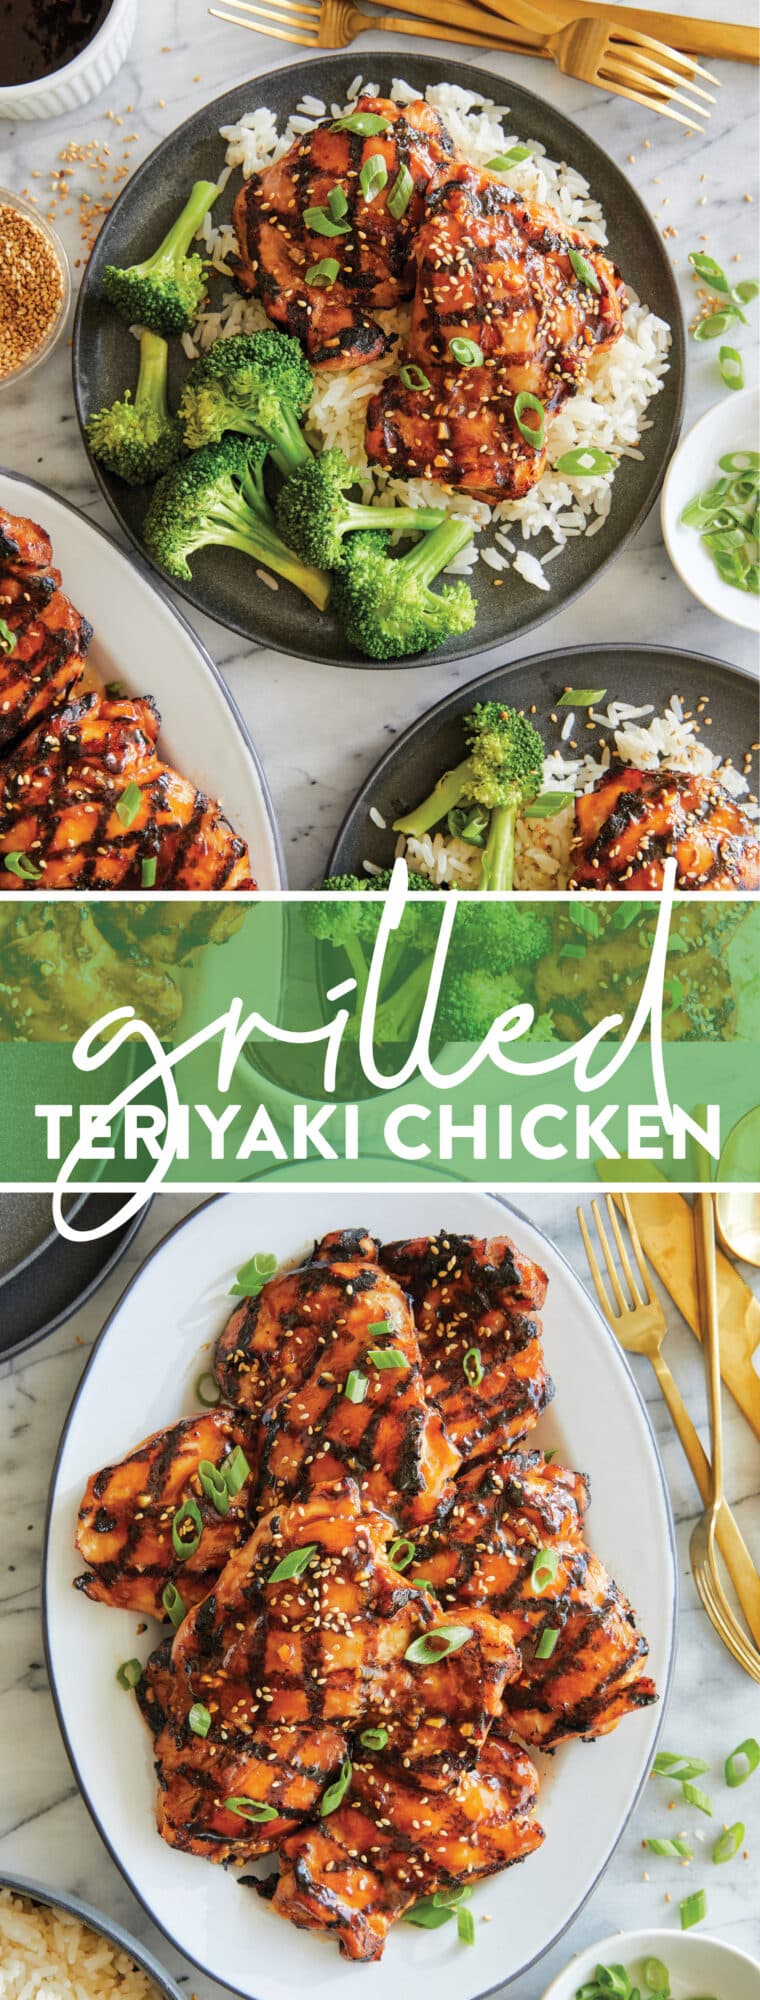 Poulet teriyaki grillé - Si épicé, si collant, si bon !  Et vous pouvez tout préparer et mariner à l'avance !  Servi avec riz + légumes.